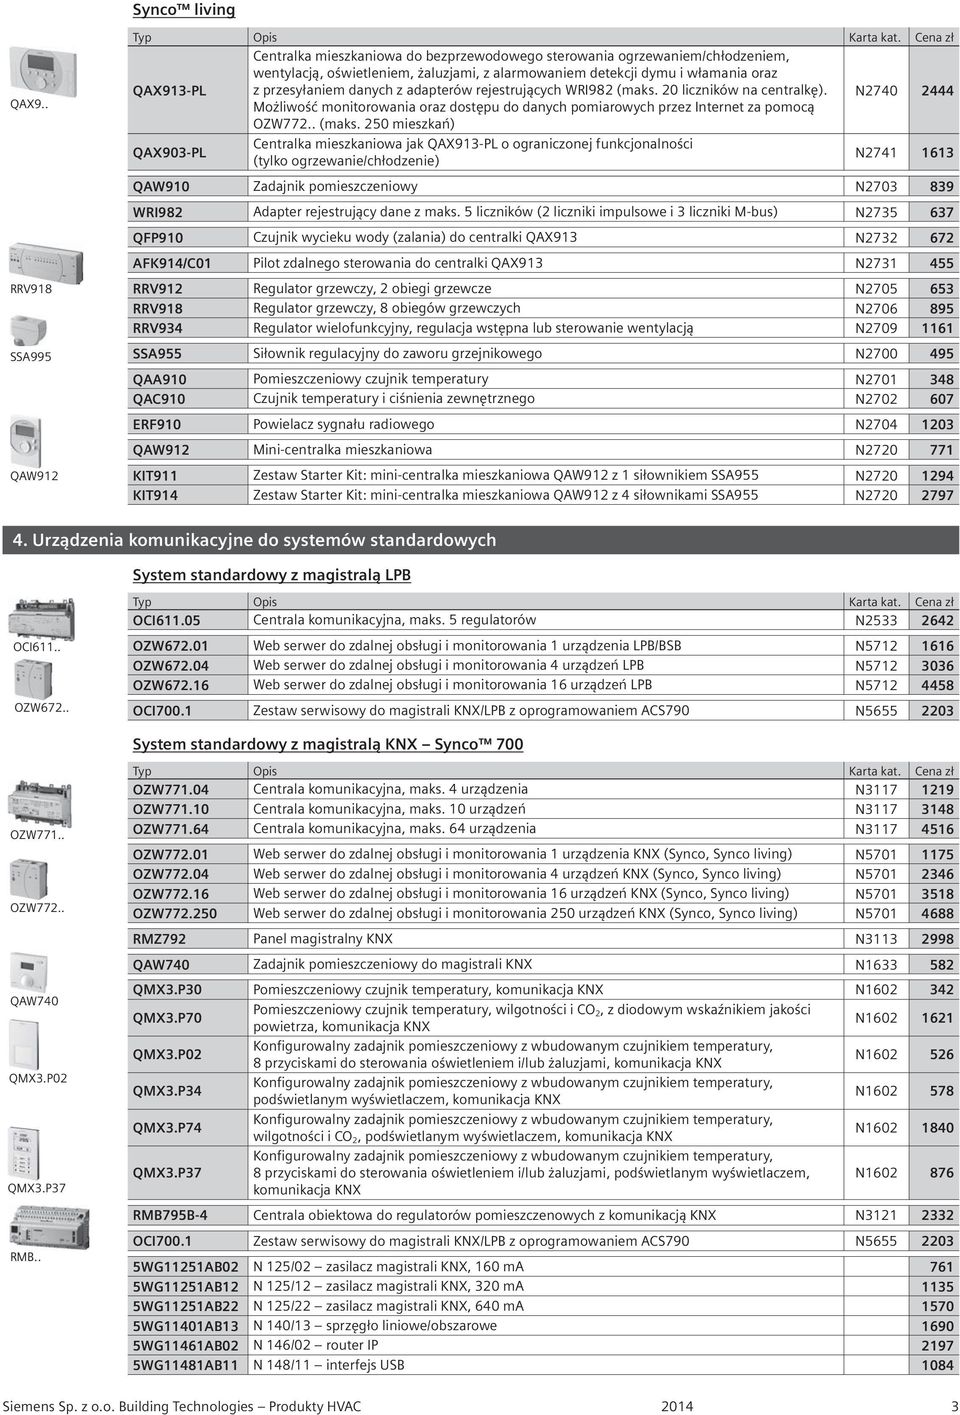 przesyłaniem danych z adapterów rejestrujących WRI982 (maks.